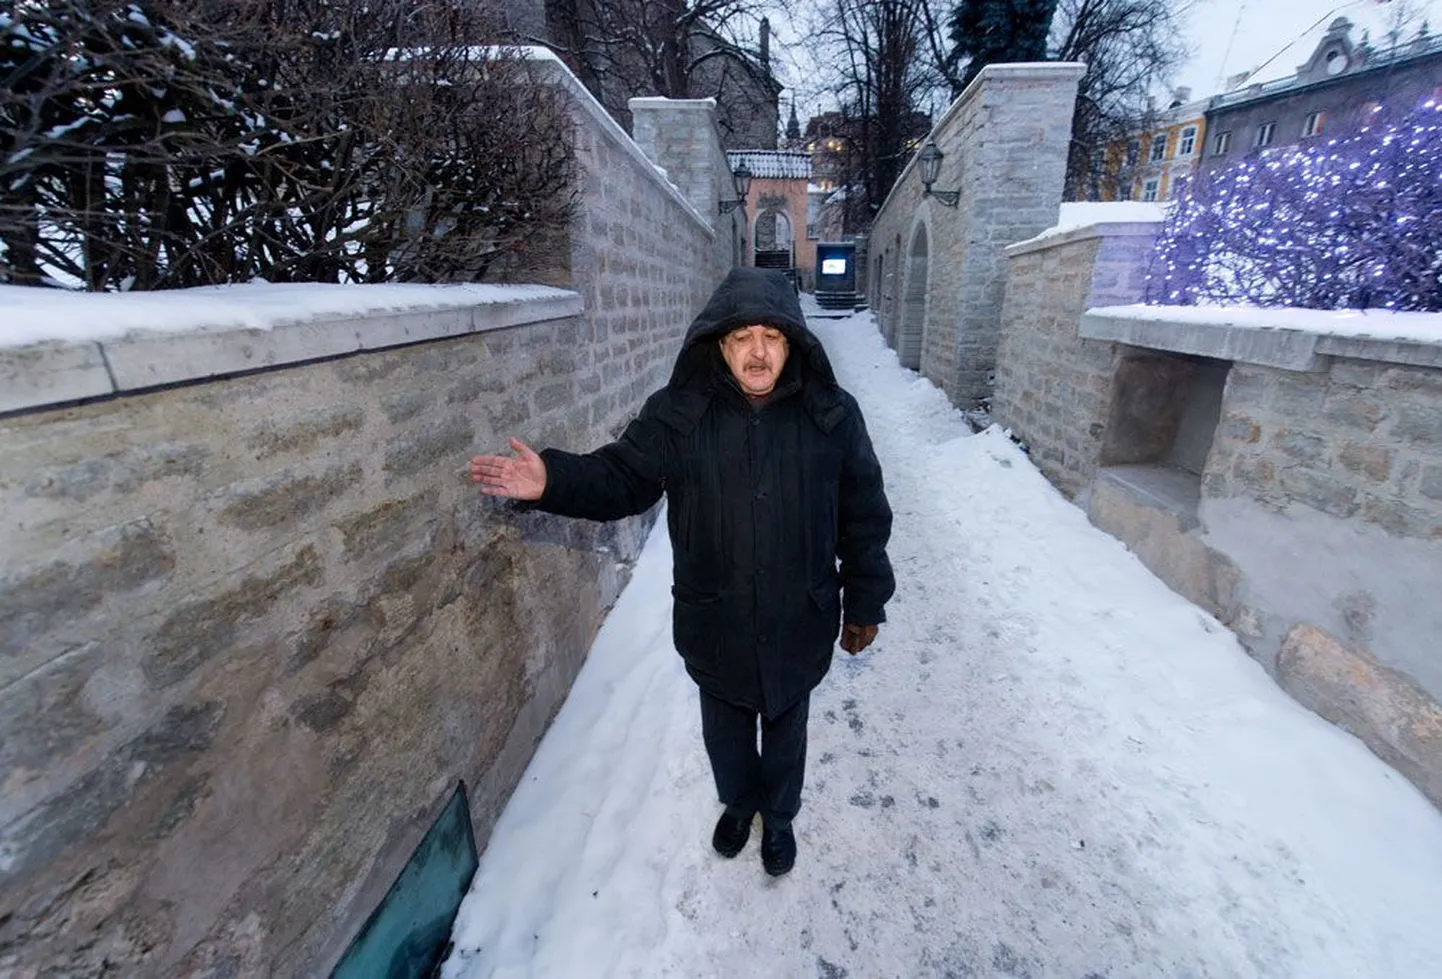 Kultuuriväärtuste ameti muinsuskaitseosakonna juhataja Boris Dubovik näitab Trepi tänava müüri, mis tuleb riigikohtu otsuse järgi maha lammutada.